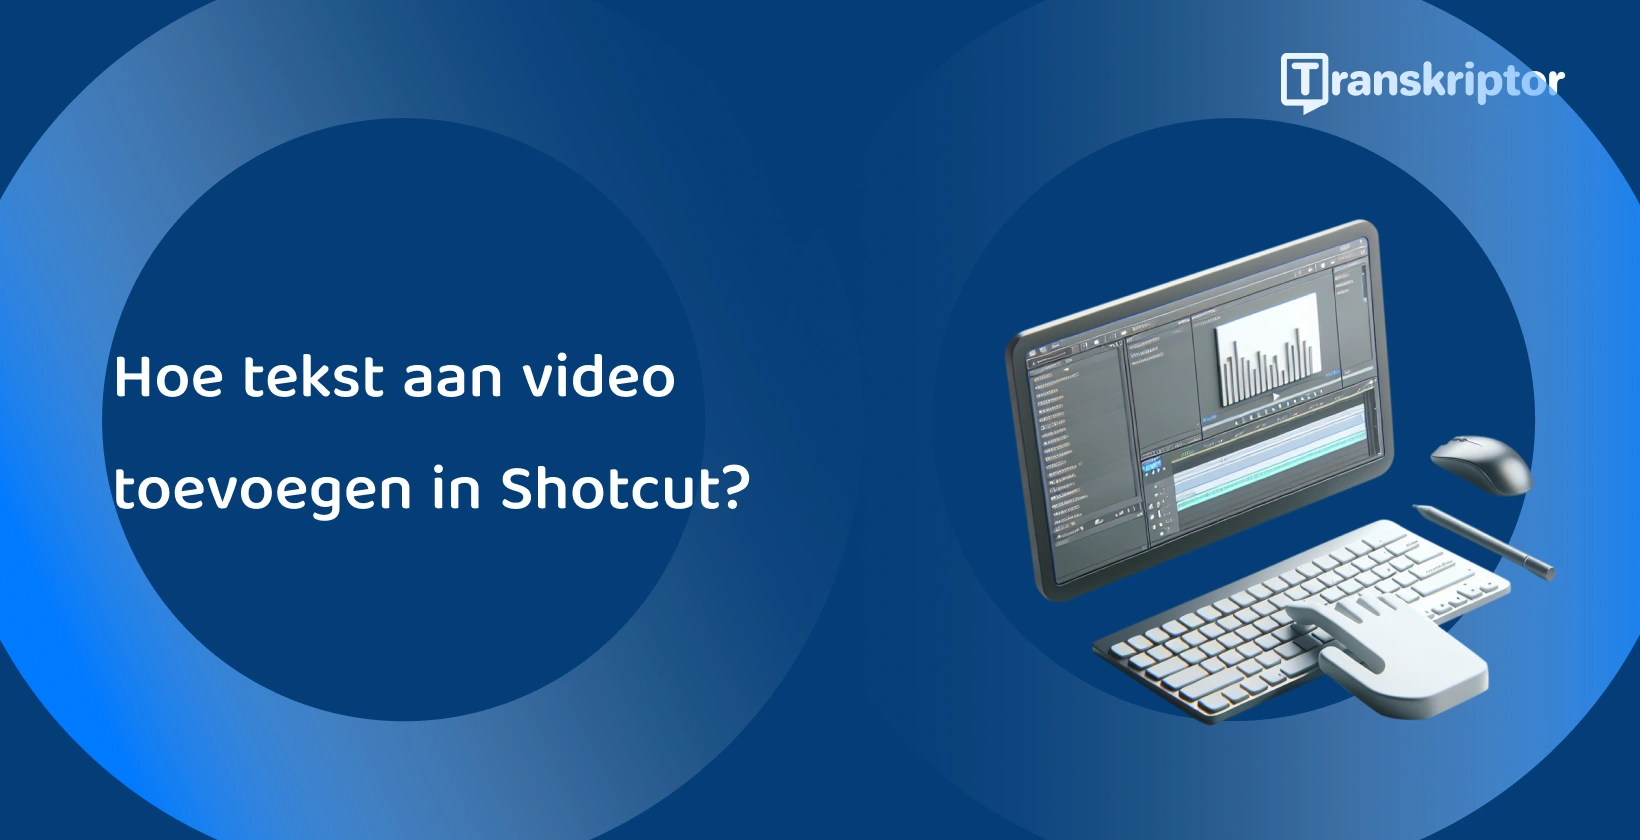 Shotcut videobewerkingssoftware op een monitor met golfvorm- en teksttools, voor het toevoegen van bijschriften en titels aan video's.